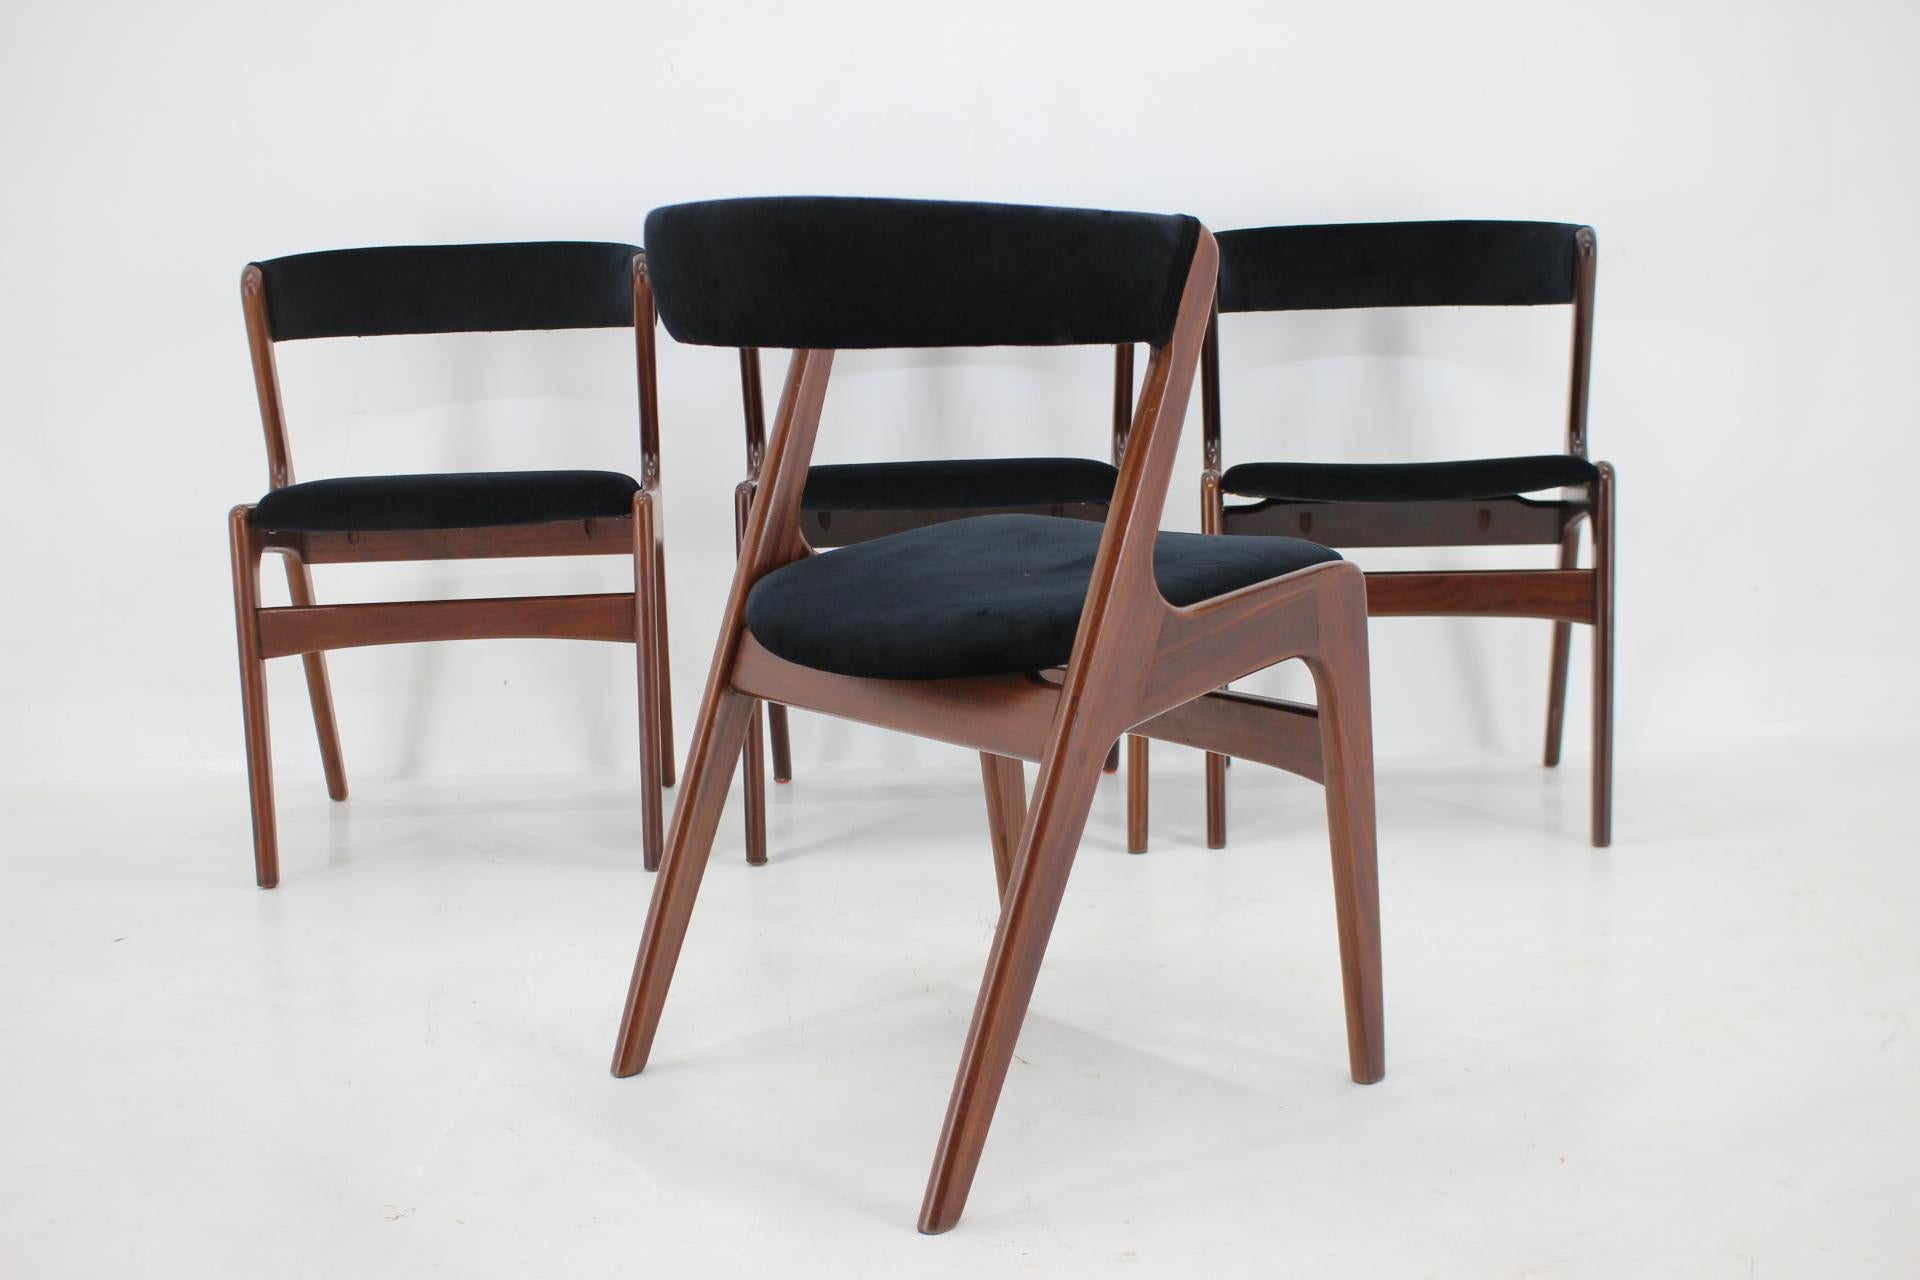 1960s Danish Teak Dining Chairs in Black Velvet  For Sale 2